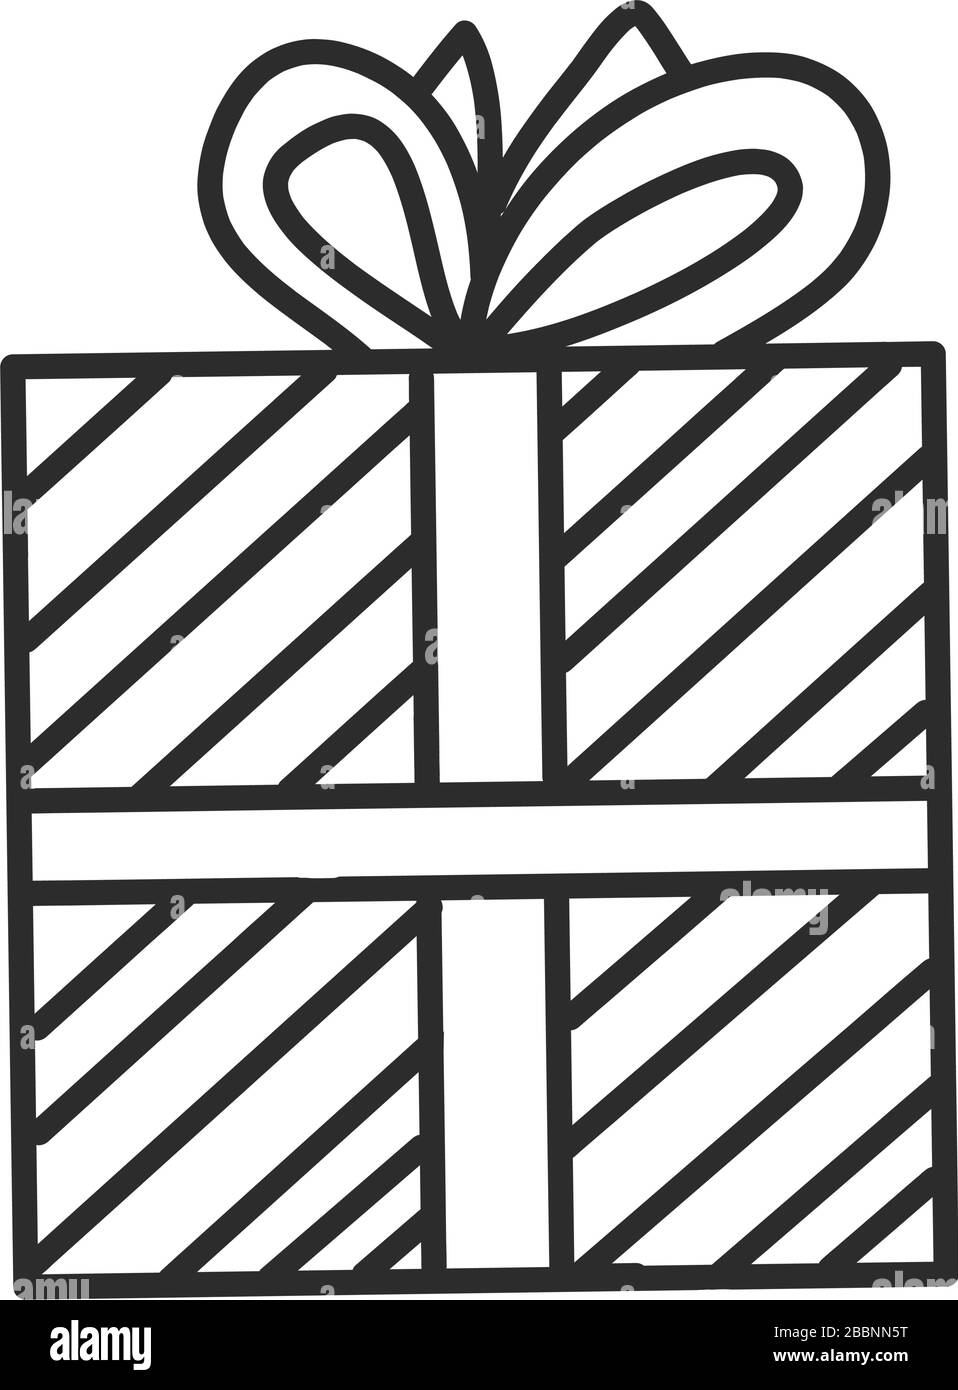 Doodle Einzelhandgeschenk, Geschenk, Neujahr und Weihnachtskiste. Illustration für Grußkarte, Poster, Aufkleber, saisonales Design, Muster, Stoff, i. Stock Vektor